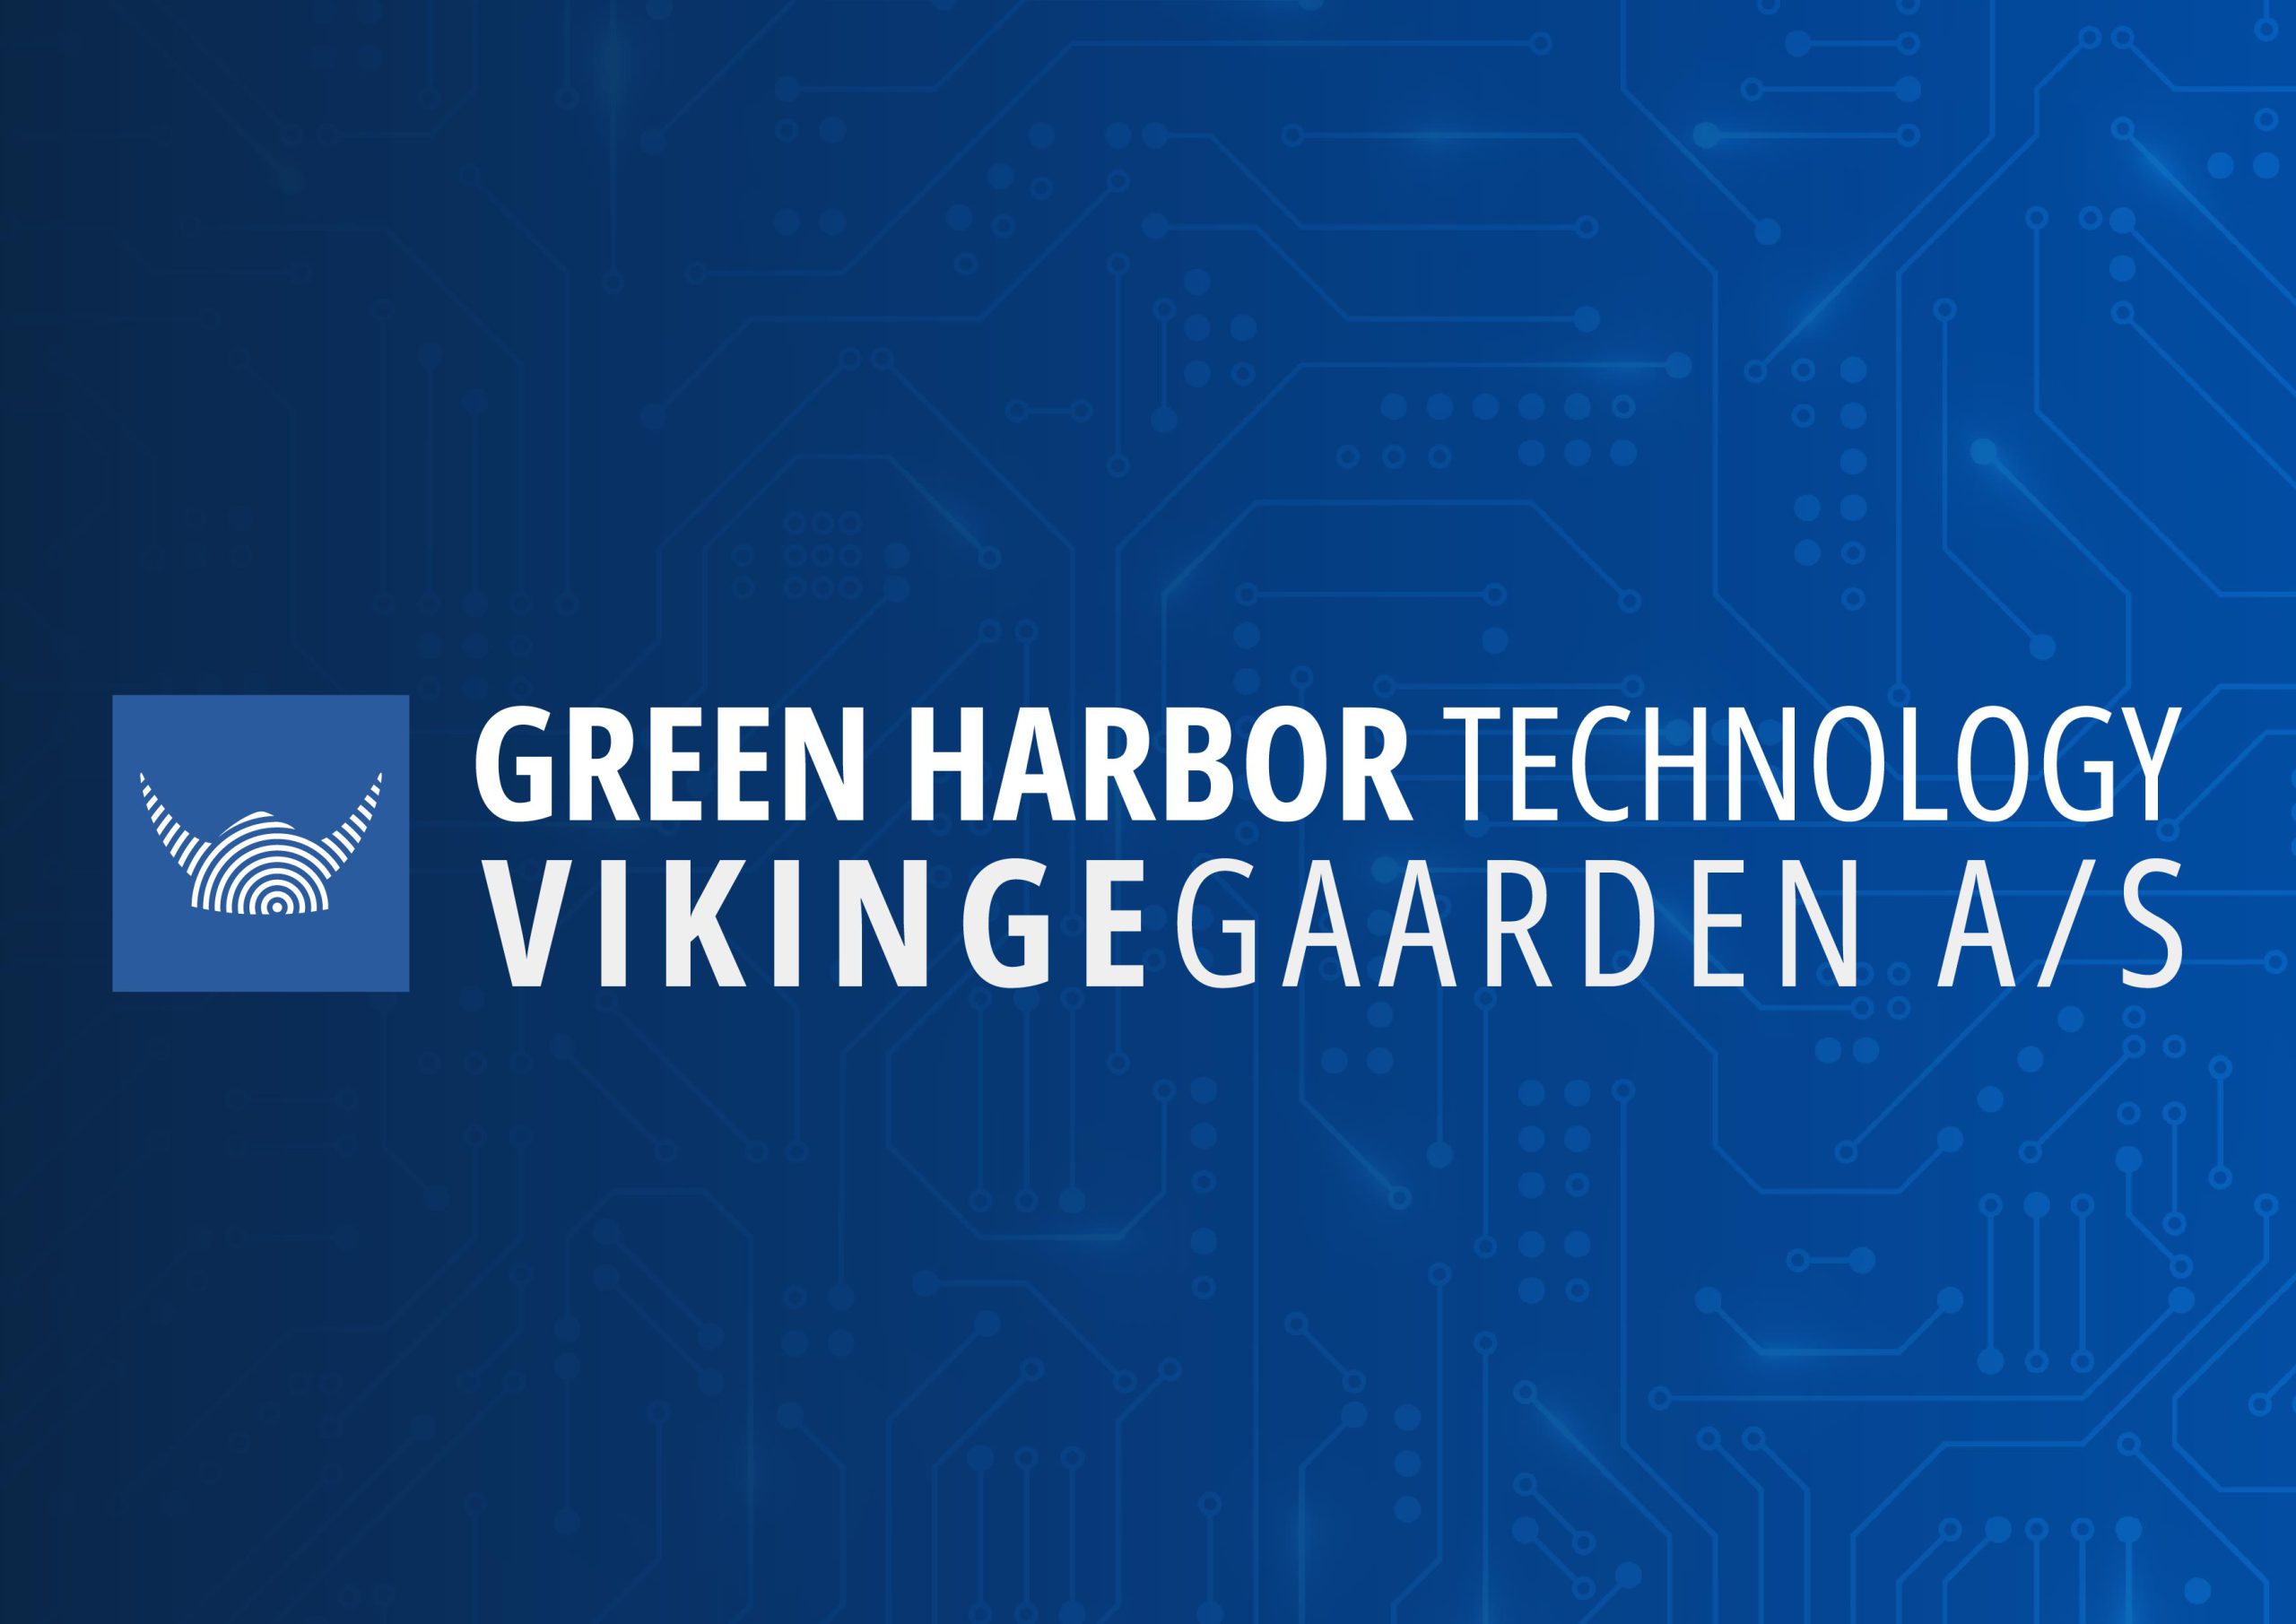 Vikingegaarden A/S är godkänd som associerad medlem i Danske Havne